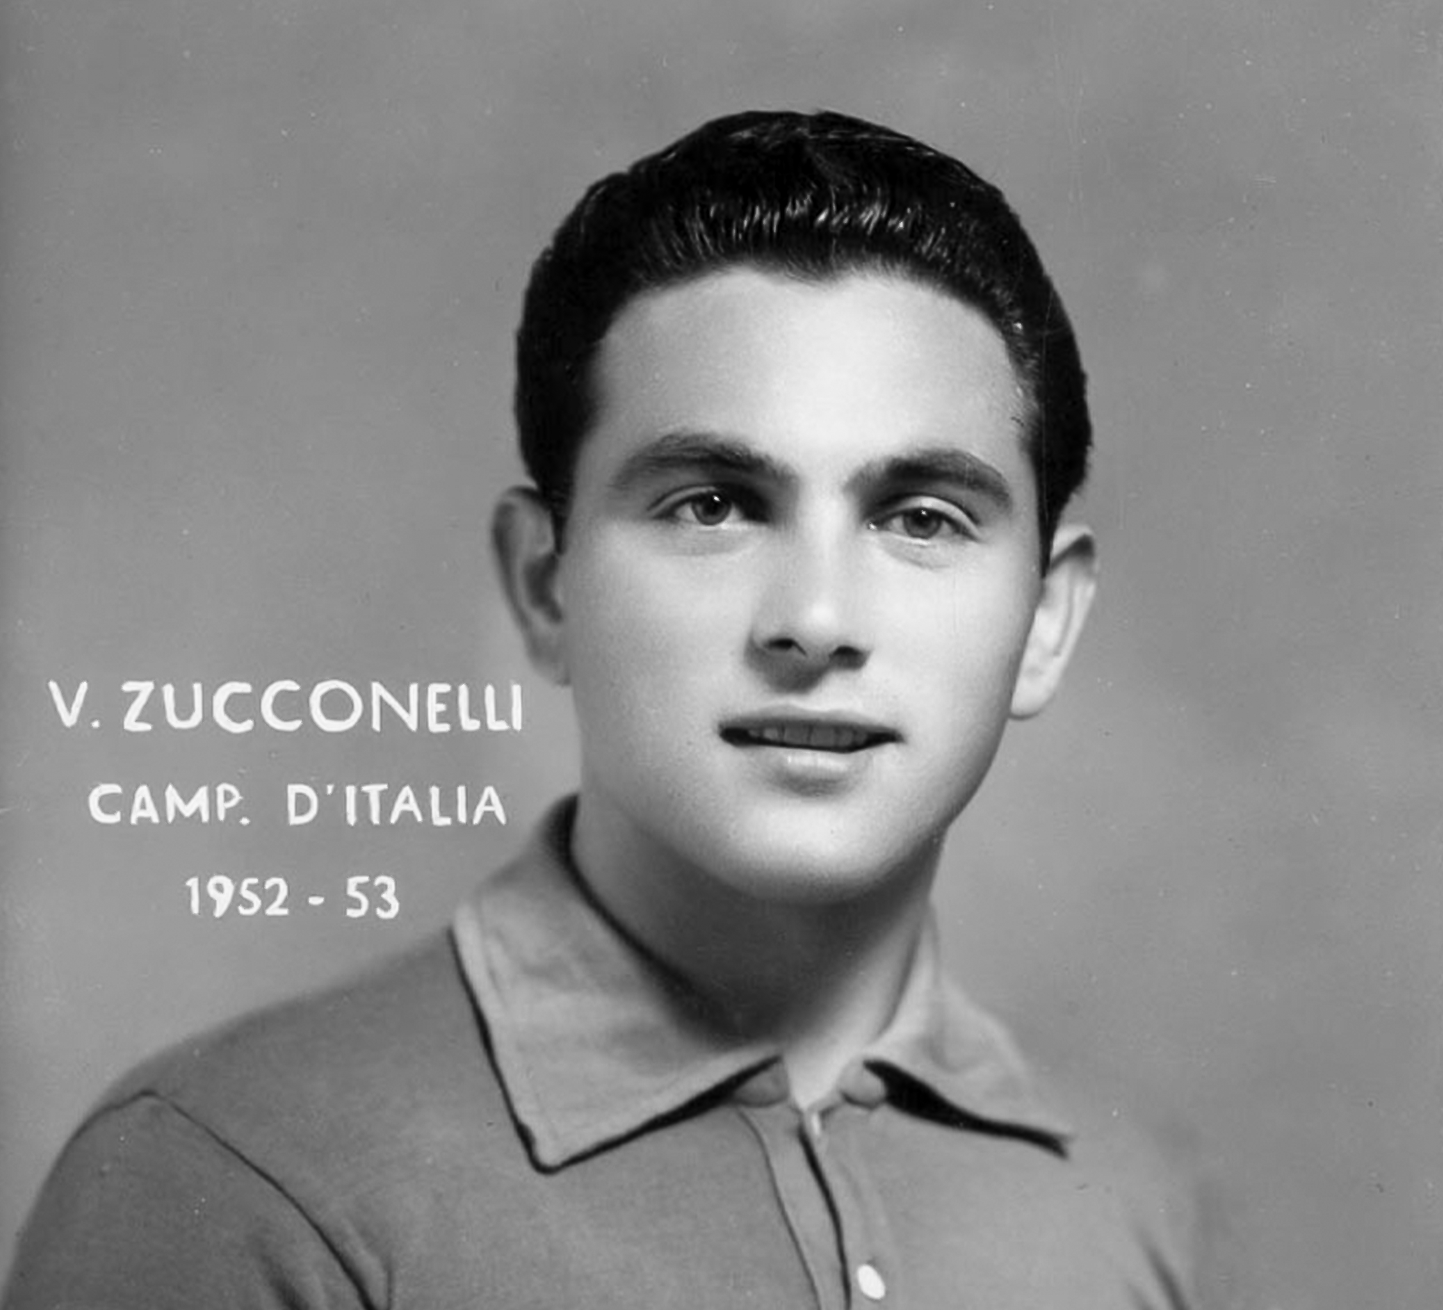 Vincenzo Zucconelli